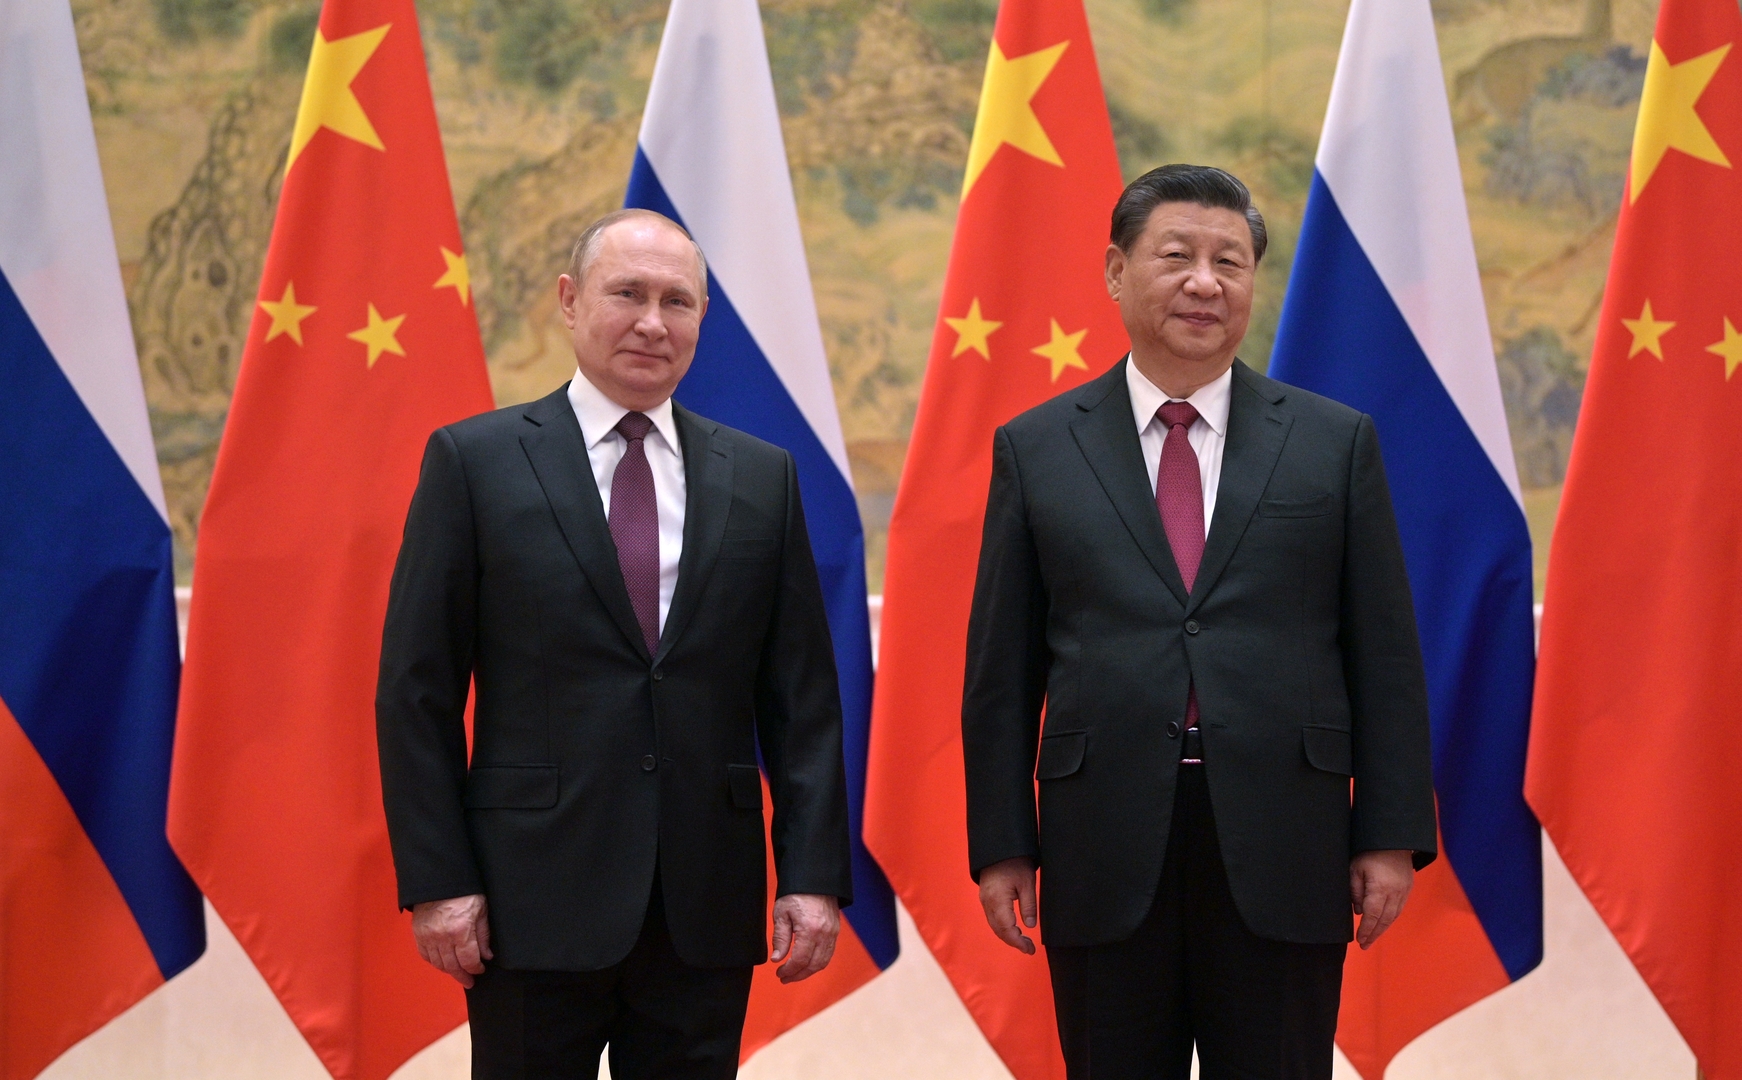 لافروف ووزير الخارجية الصيني الجديد يؤكدان رفض المسار الأمريكي في المواجهة مع الصين وروسيا